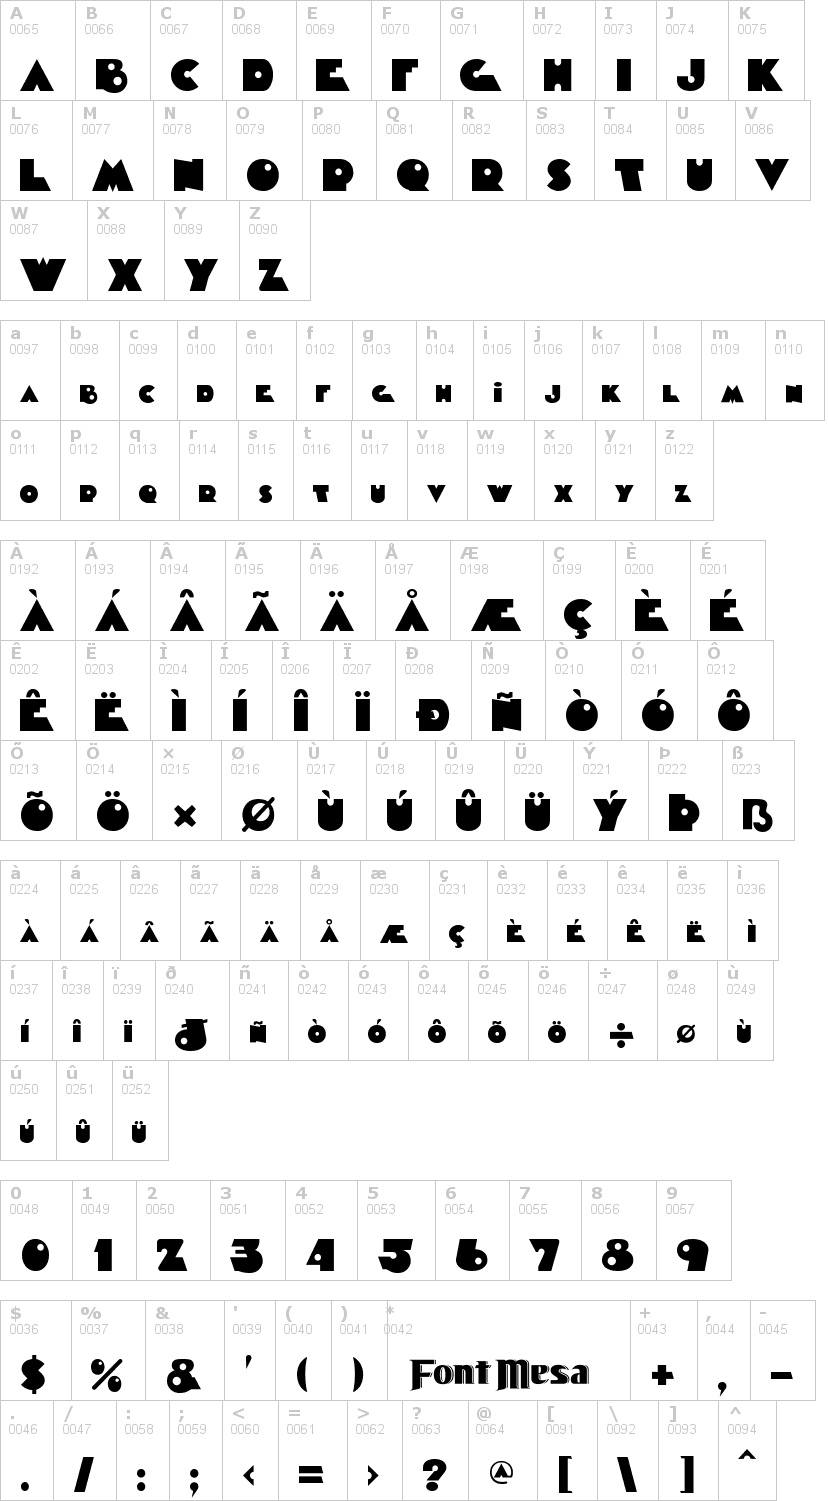 Lettere dell'alfabeto del font timepiece con le quali è possibile realizzare adesivi prespaziati